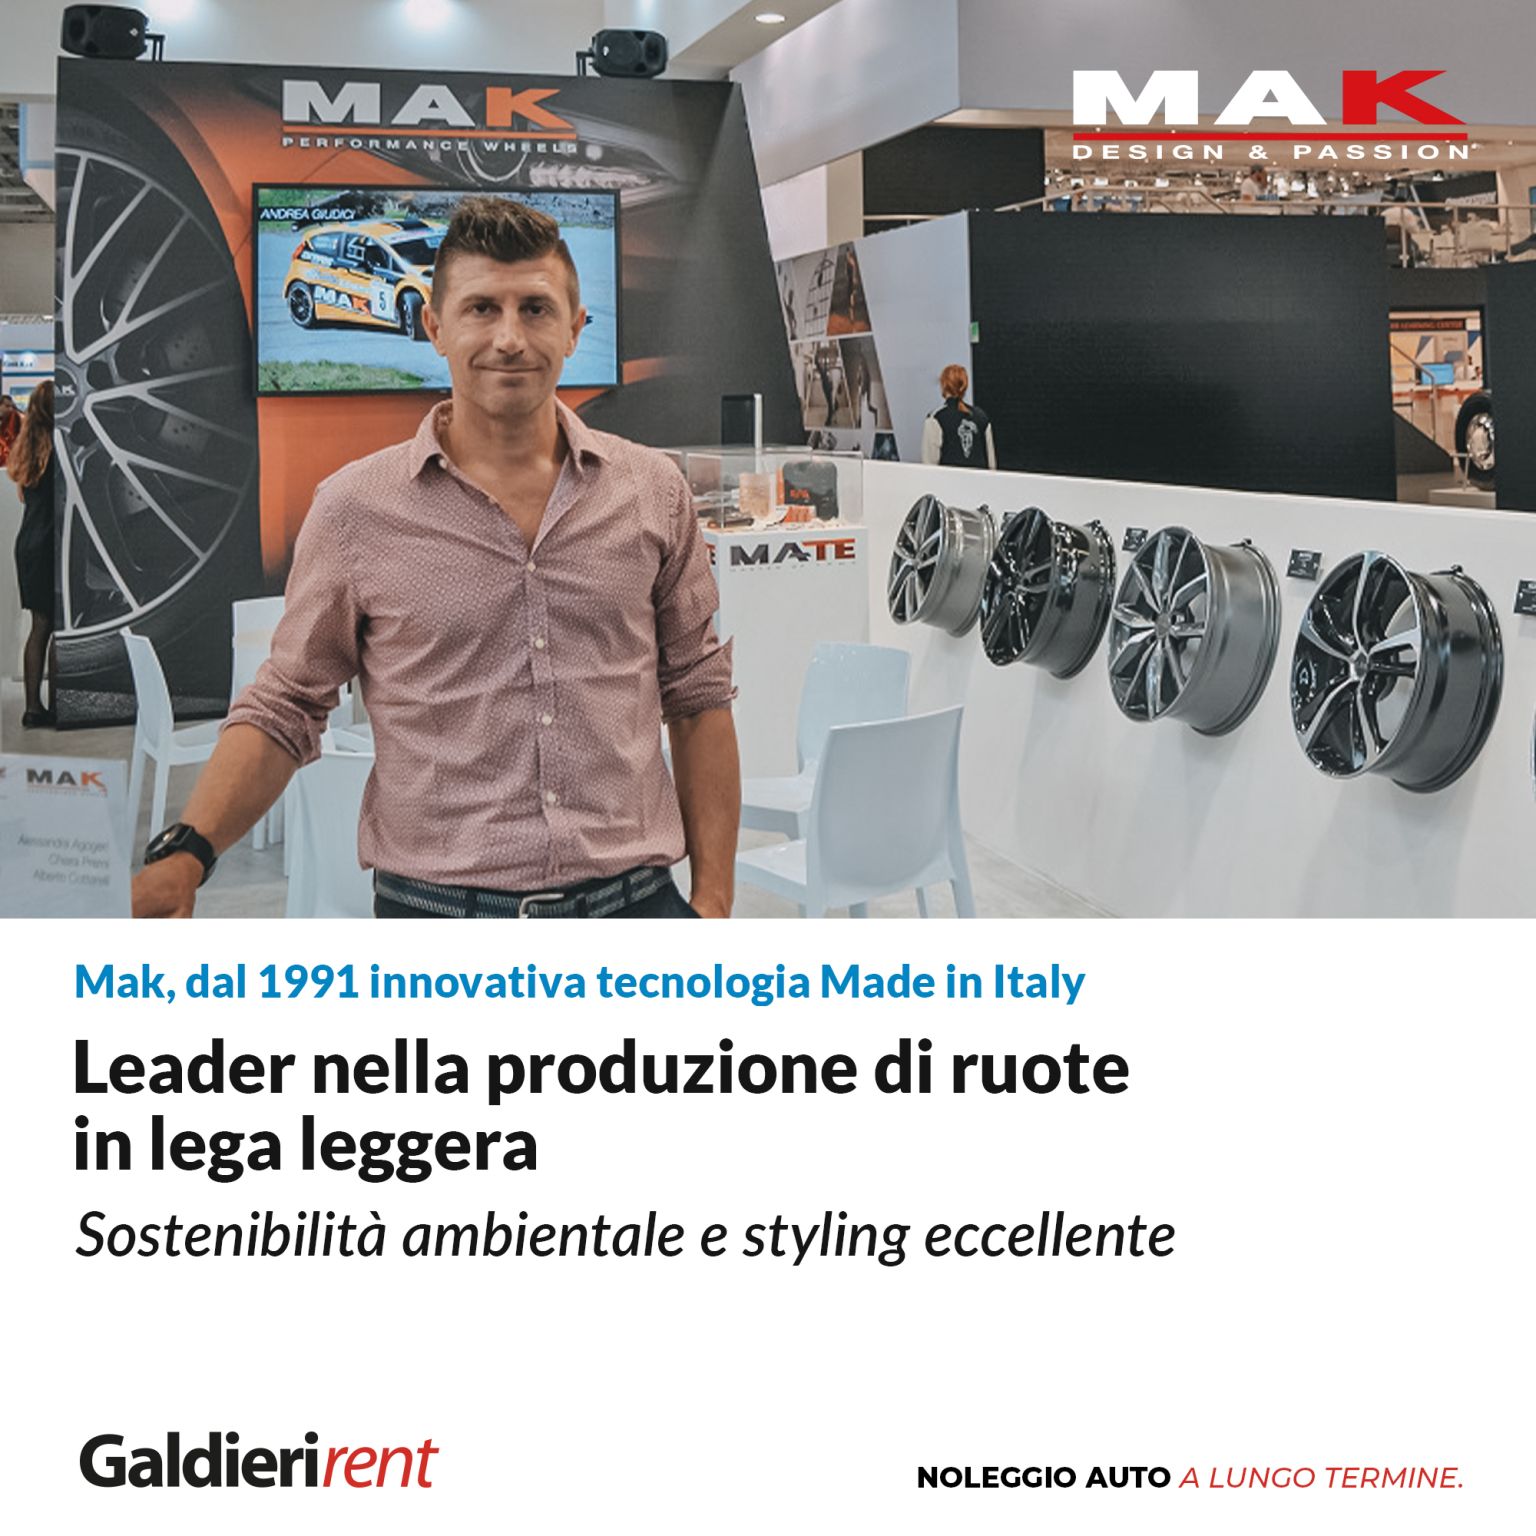 Mak: leader nella produzione di ruote in lega leggera